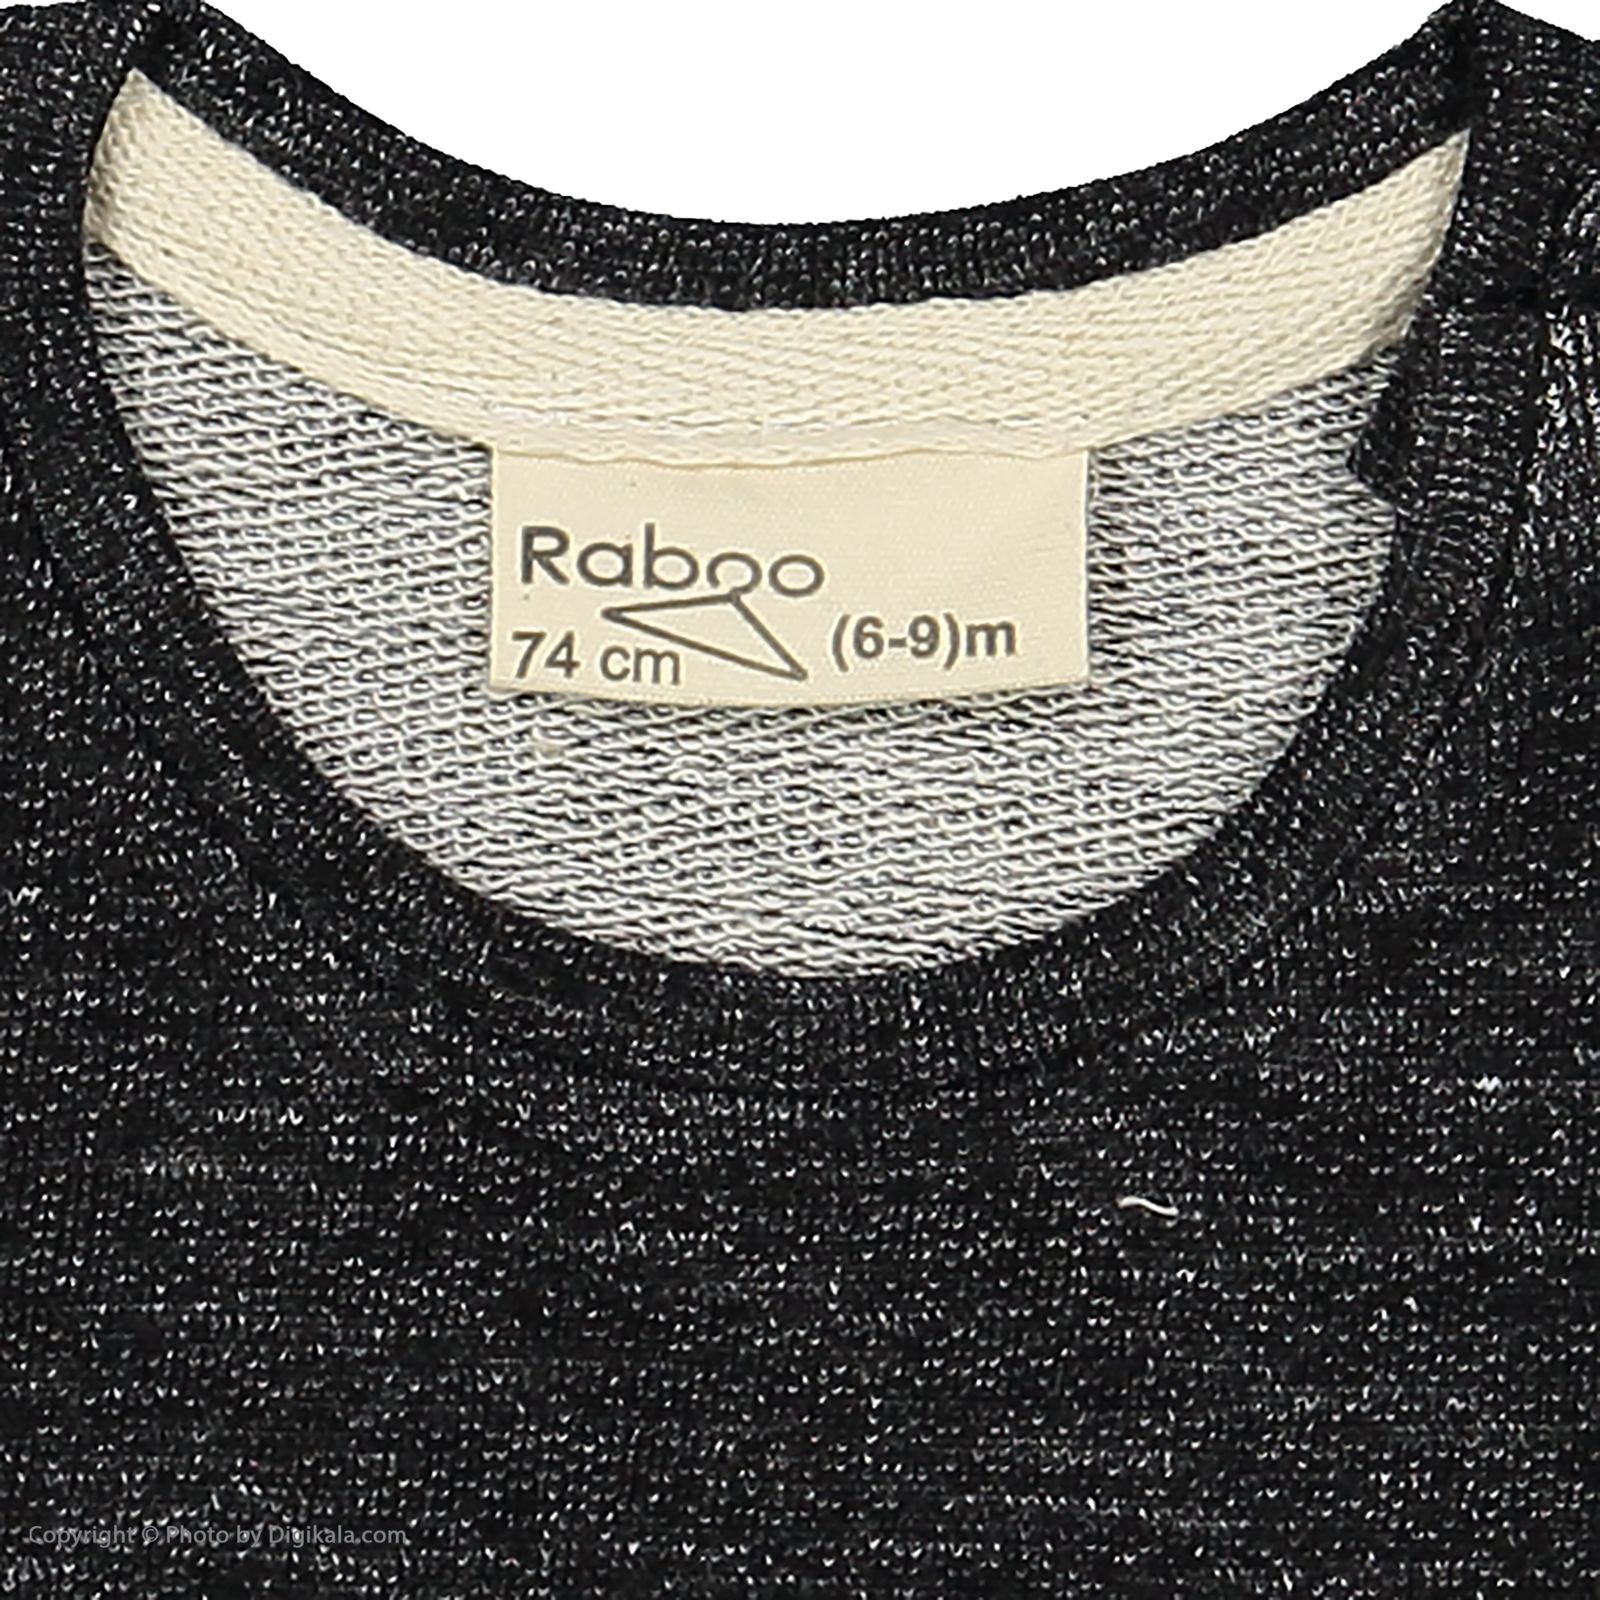 ست تی شرت و شلوار نوزادی رابو مدل 2051100-9490 -  - 5